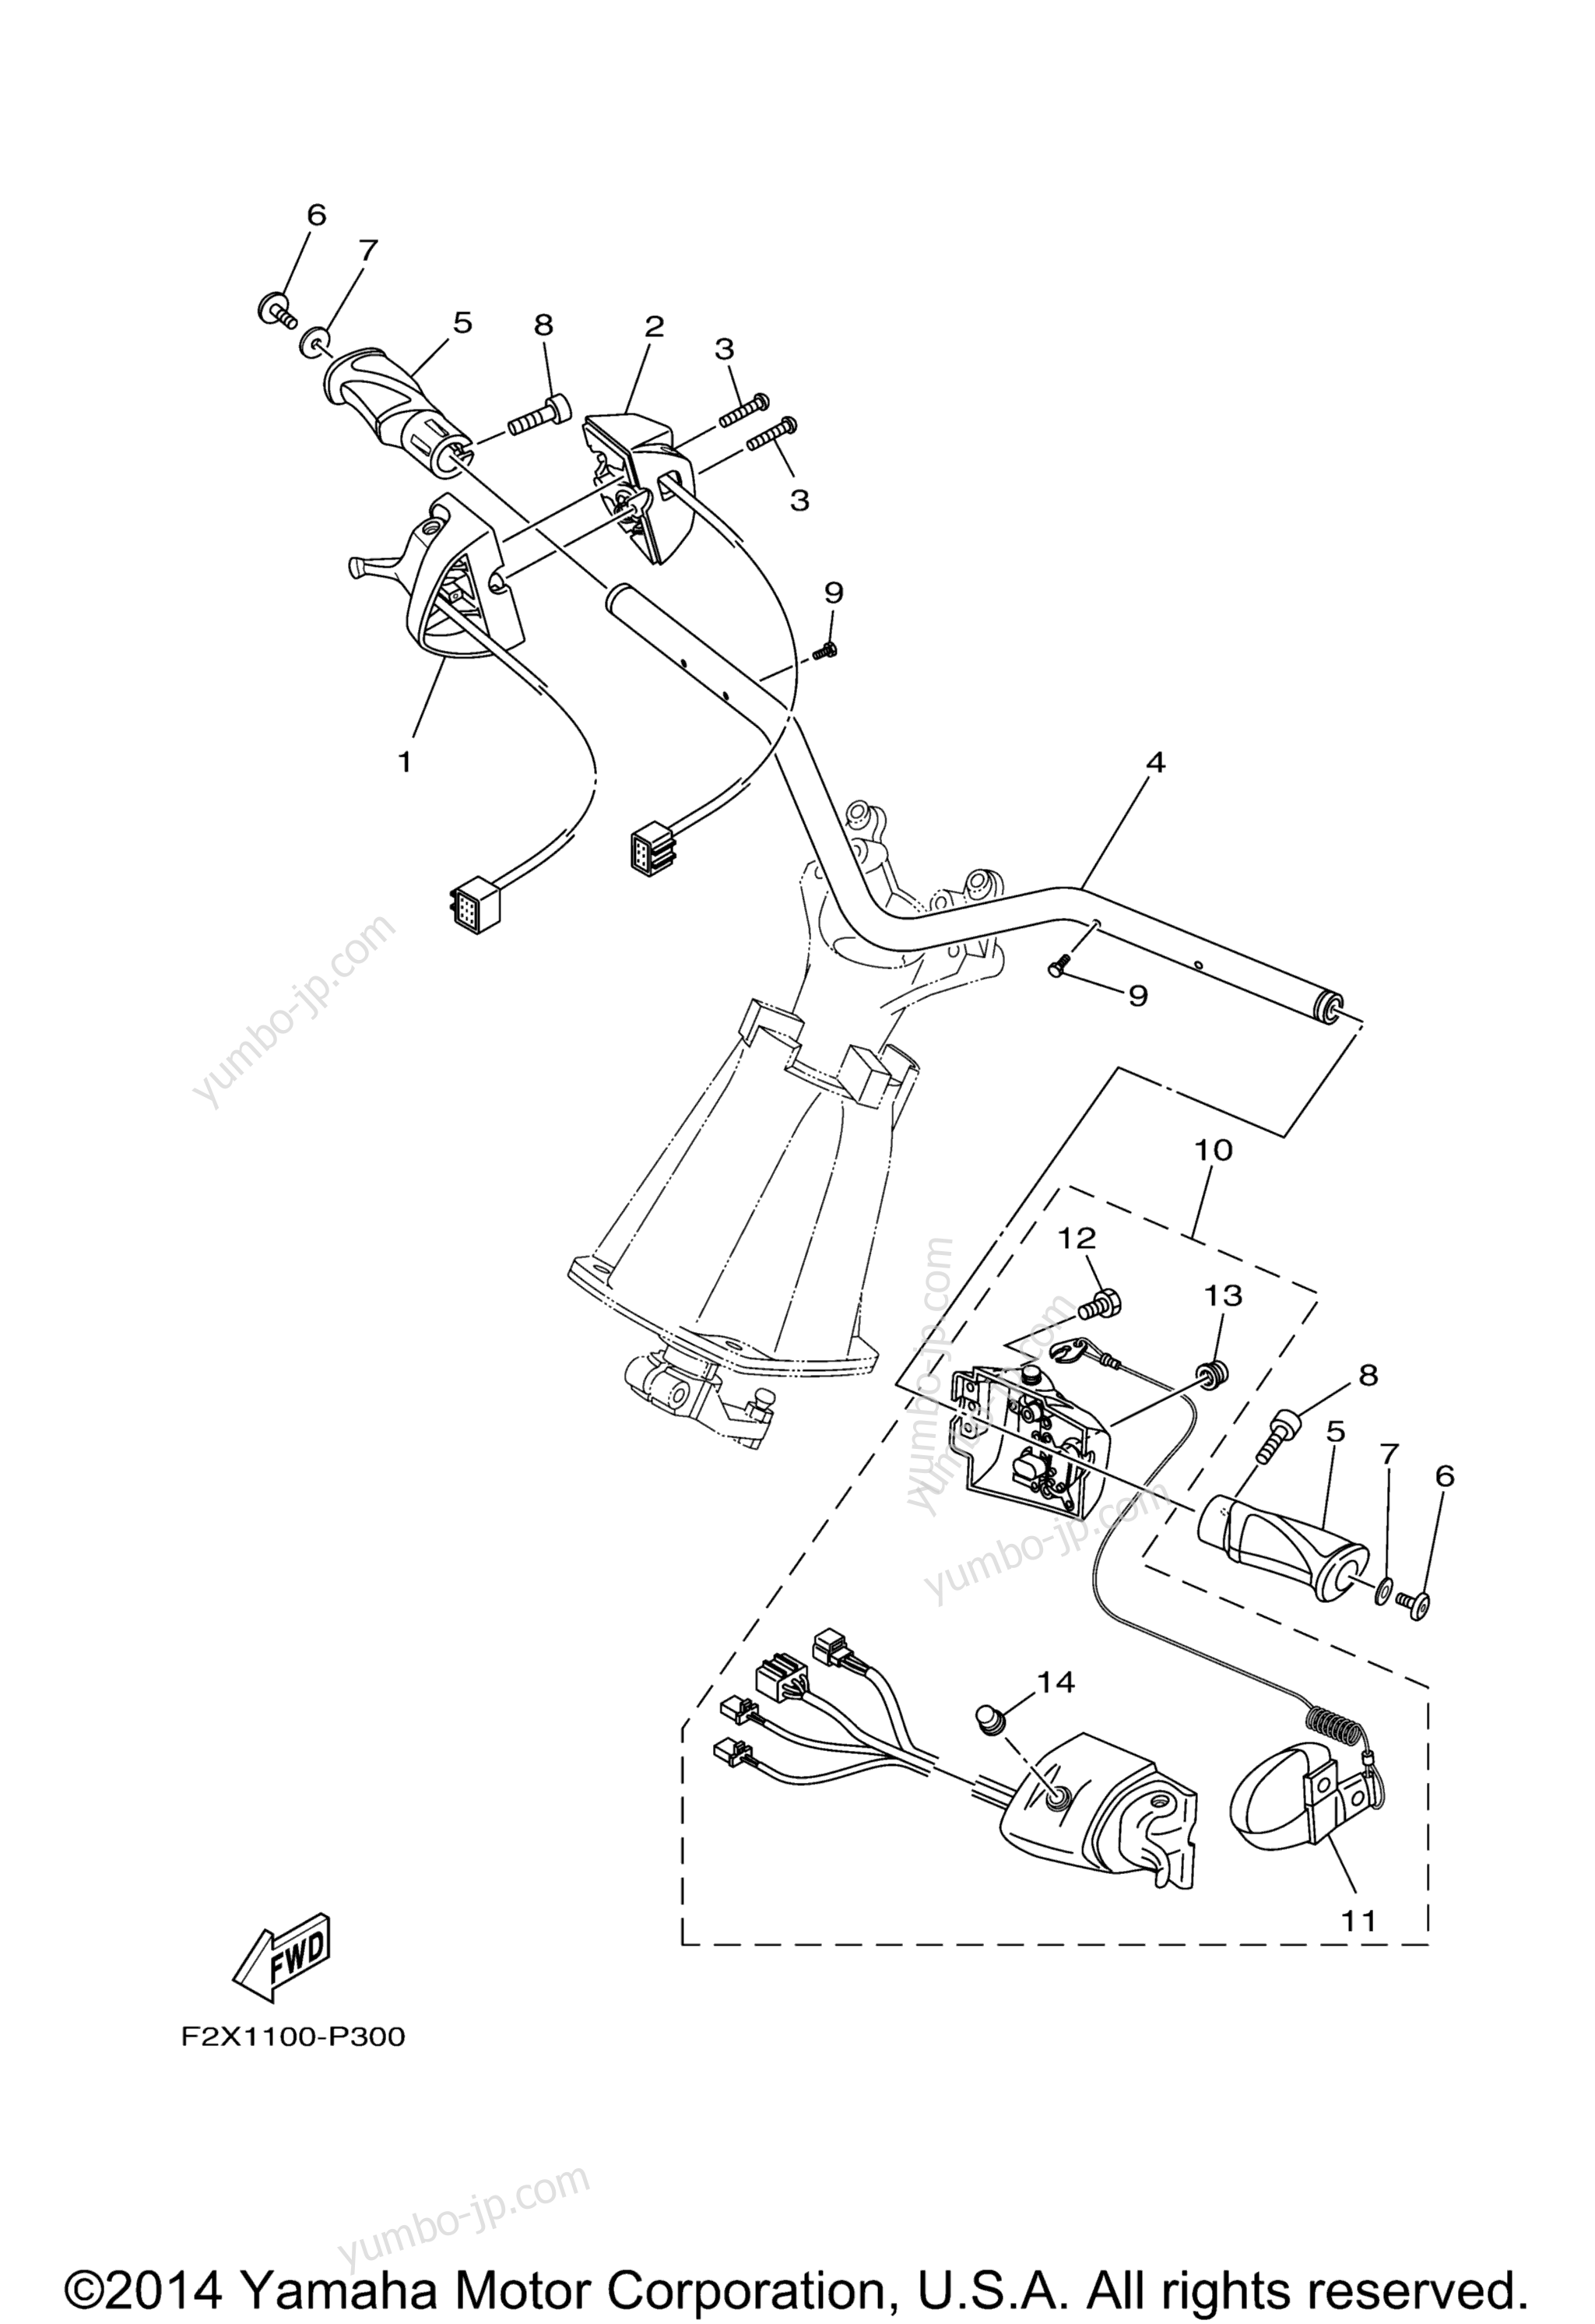 Steering 1 для гидроциклов YAMAHA VX CRUISER_VX1100BP VX DELUXE (VX1100BP) 2015 г.